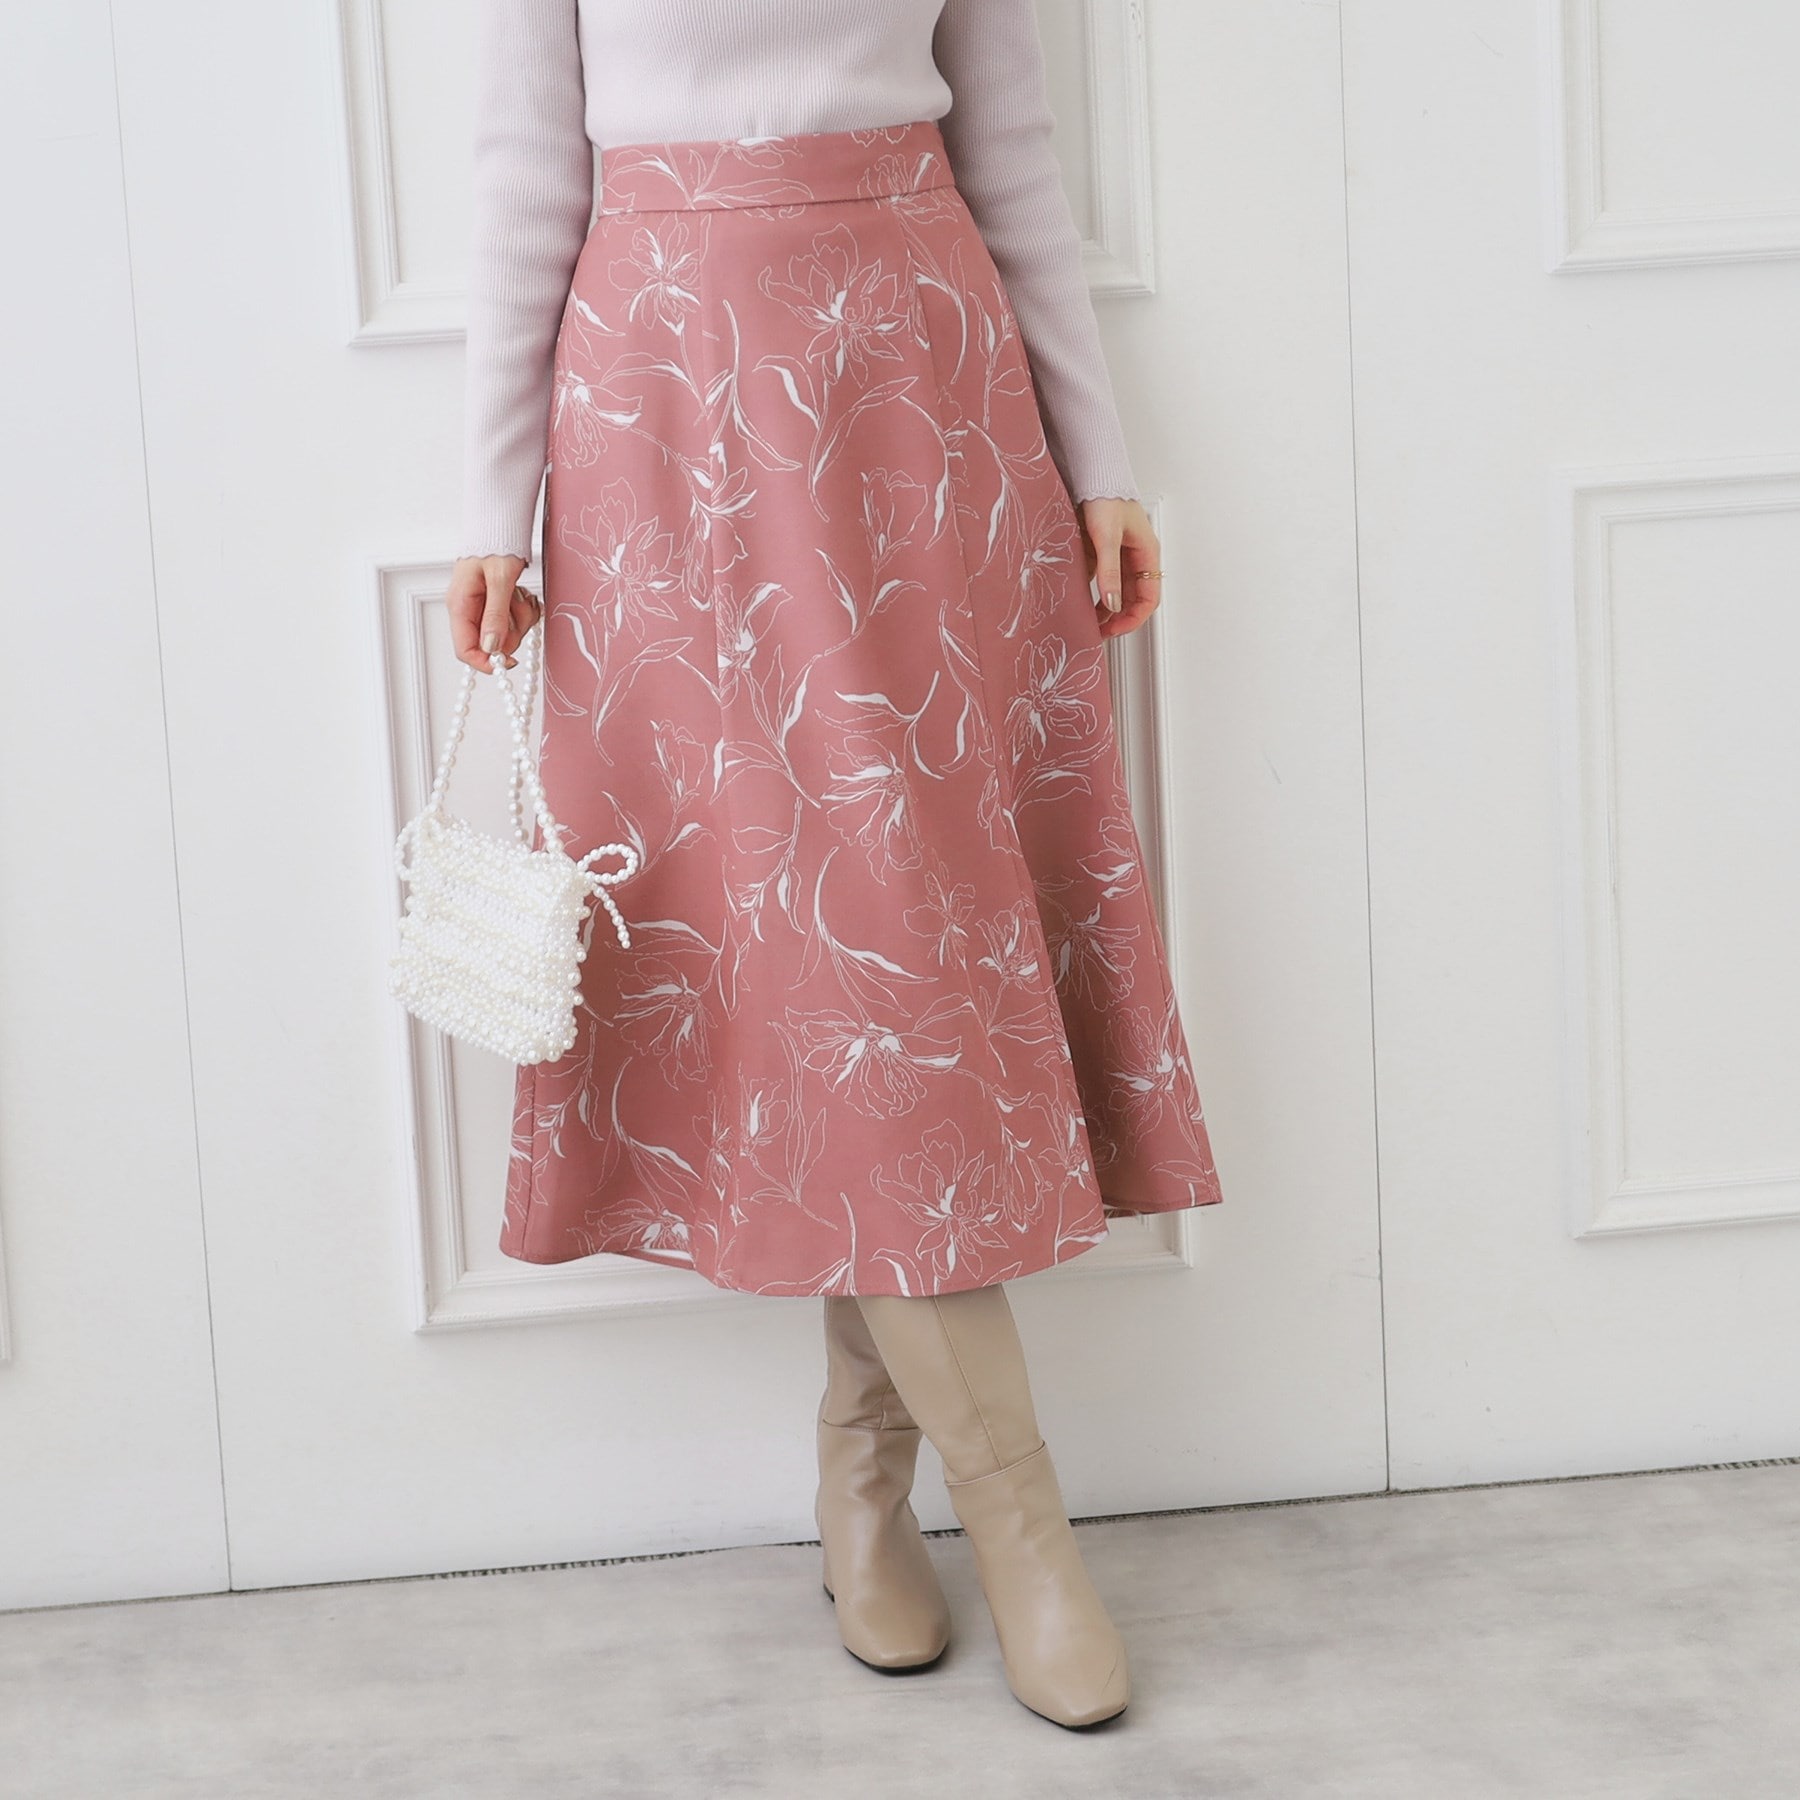 クチュールブローチ(Couture Brooch)の起毛コールフラワープリントスカート ベビーピンク(171)